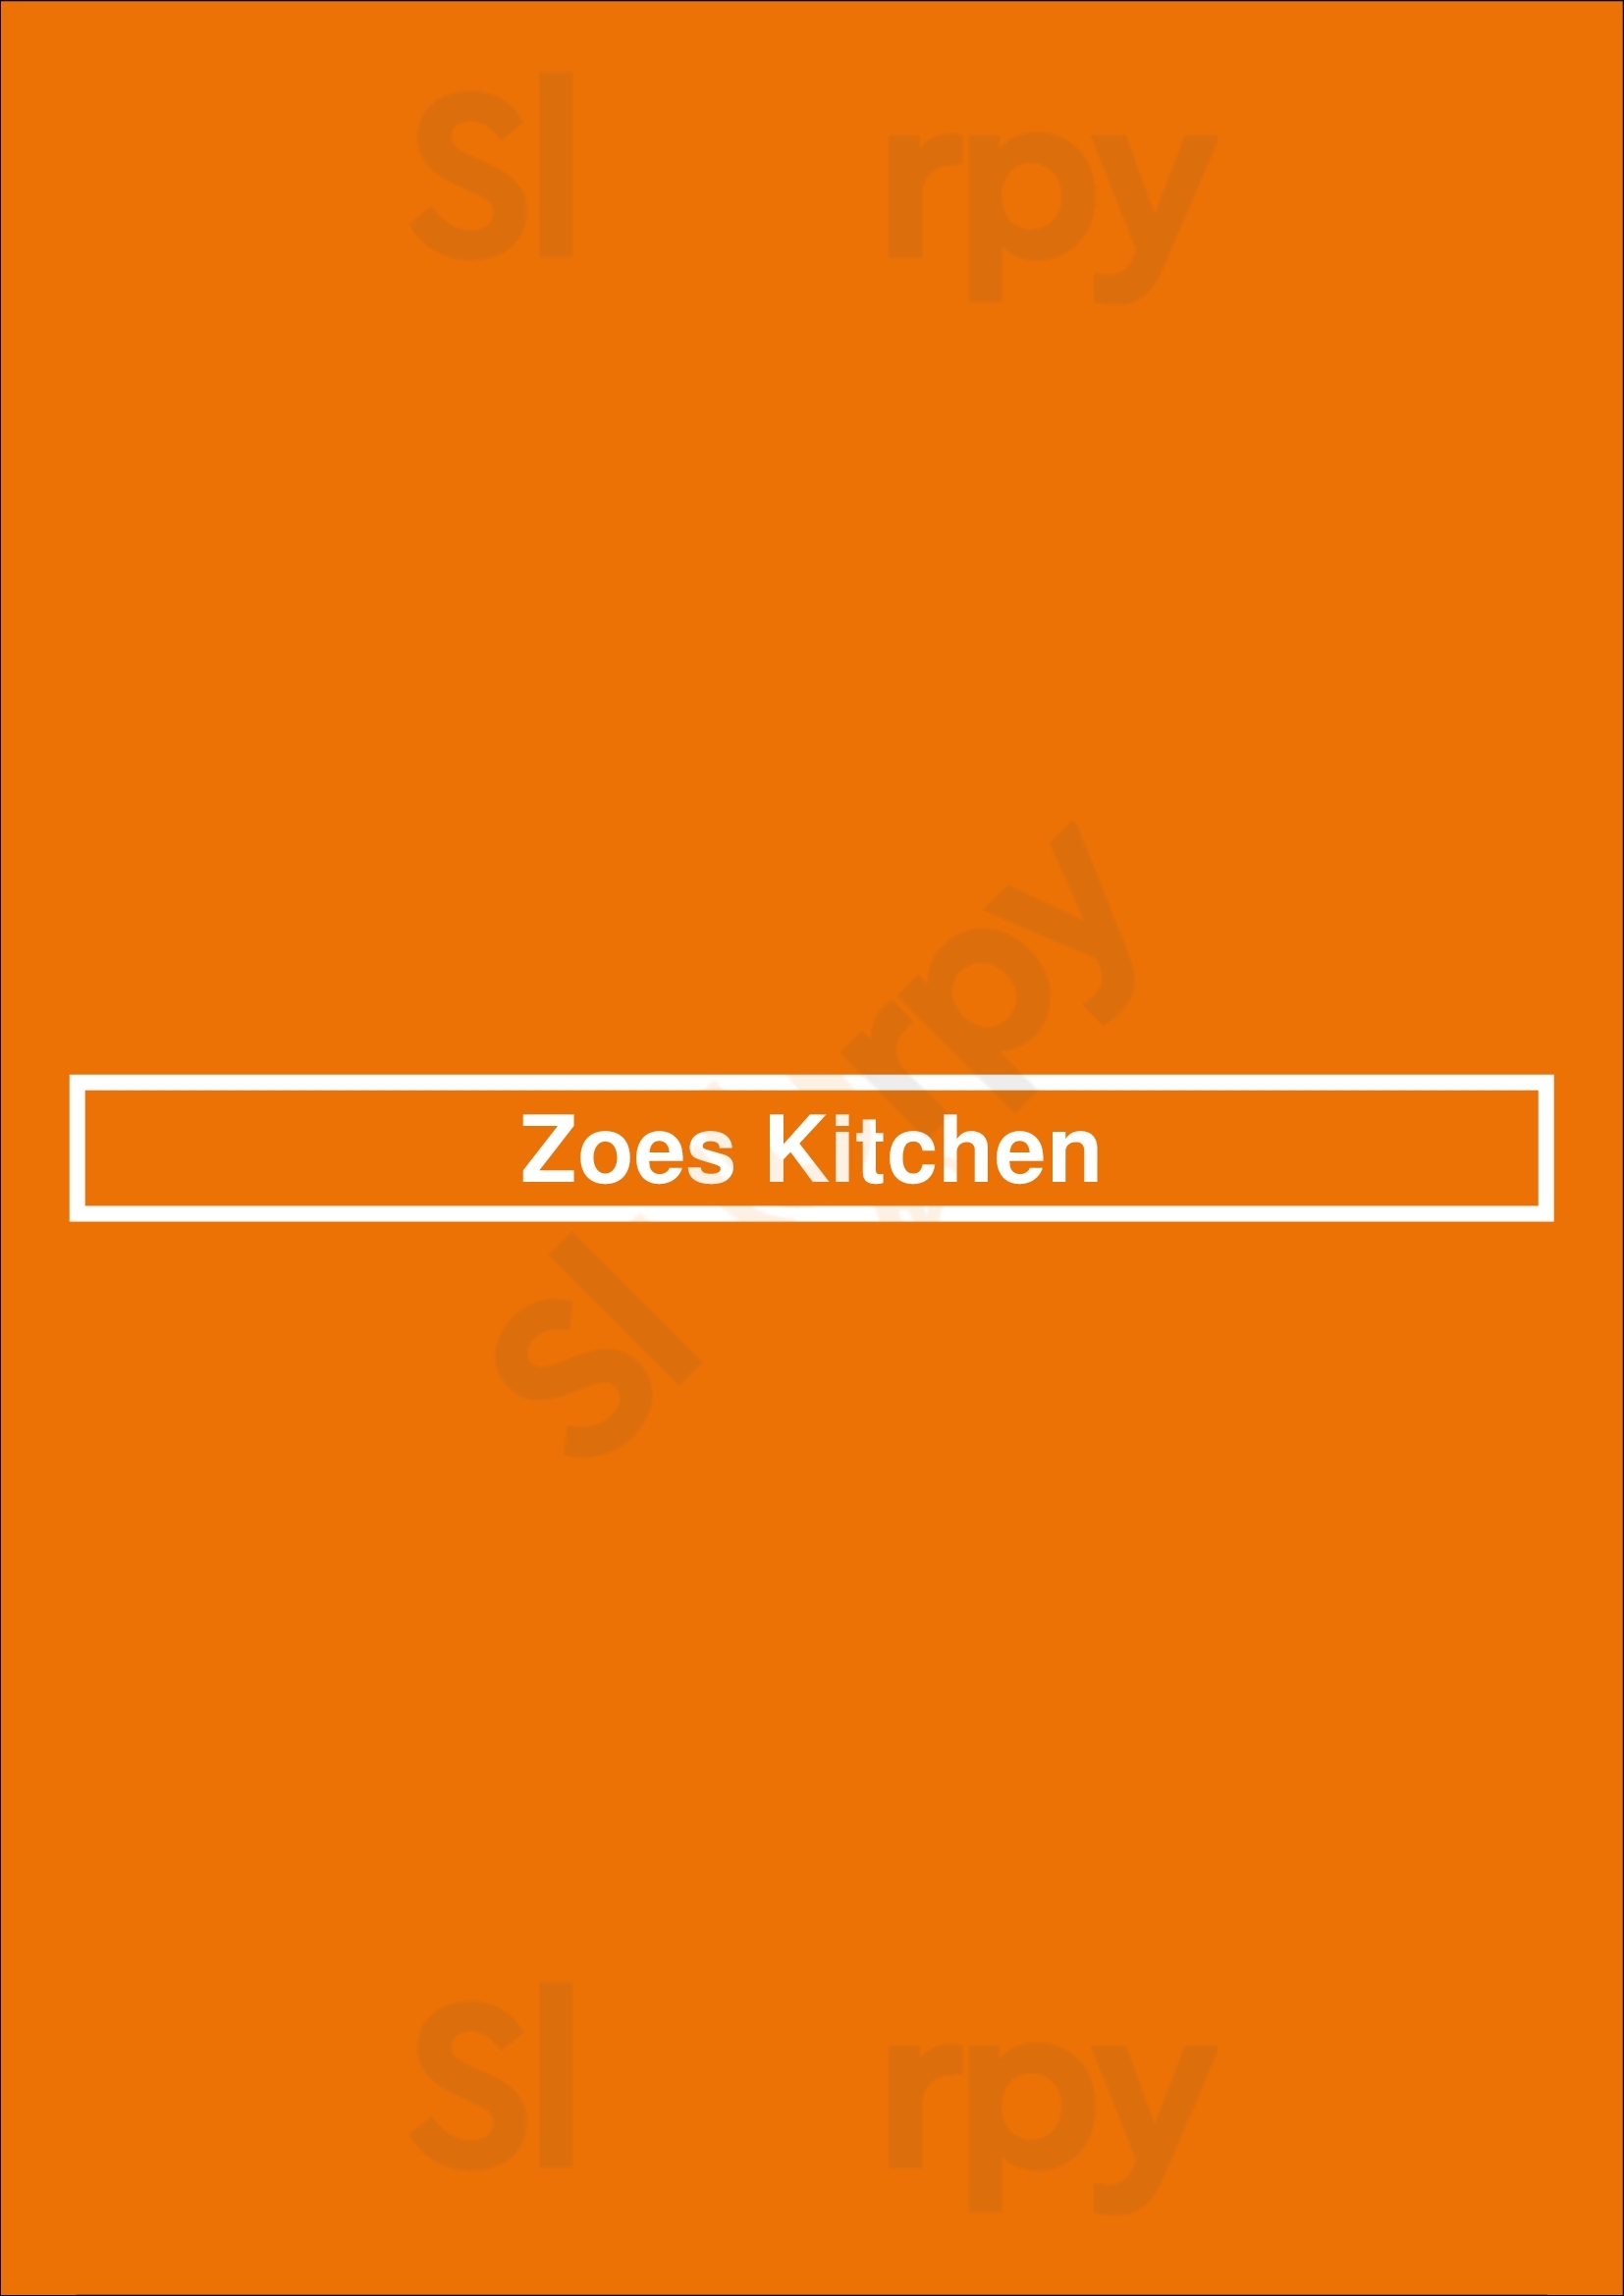 Zoe's Kitchen Charlotte Menu - 1